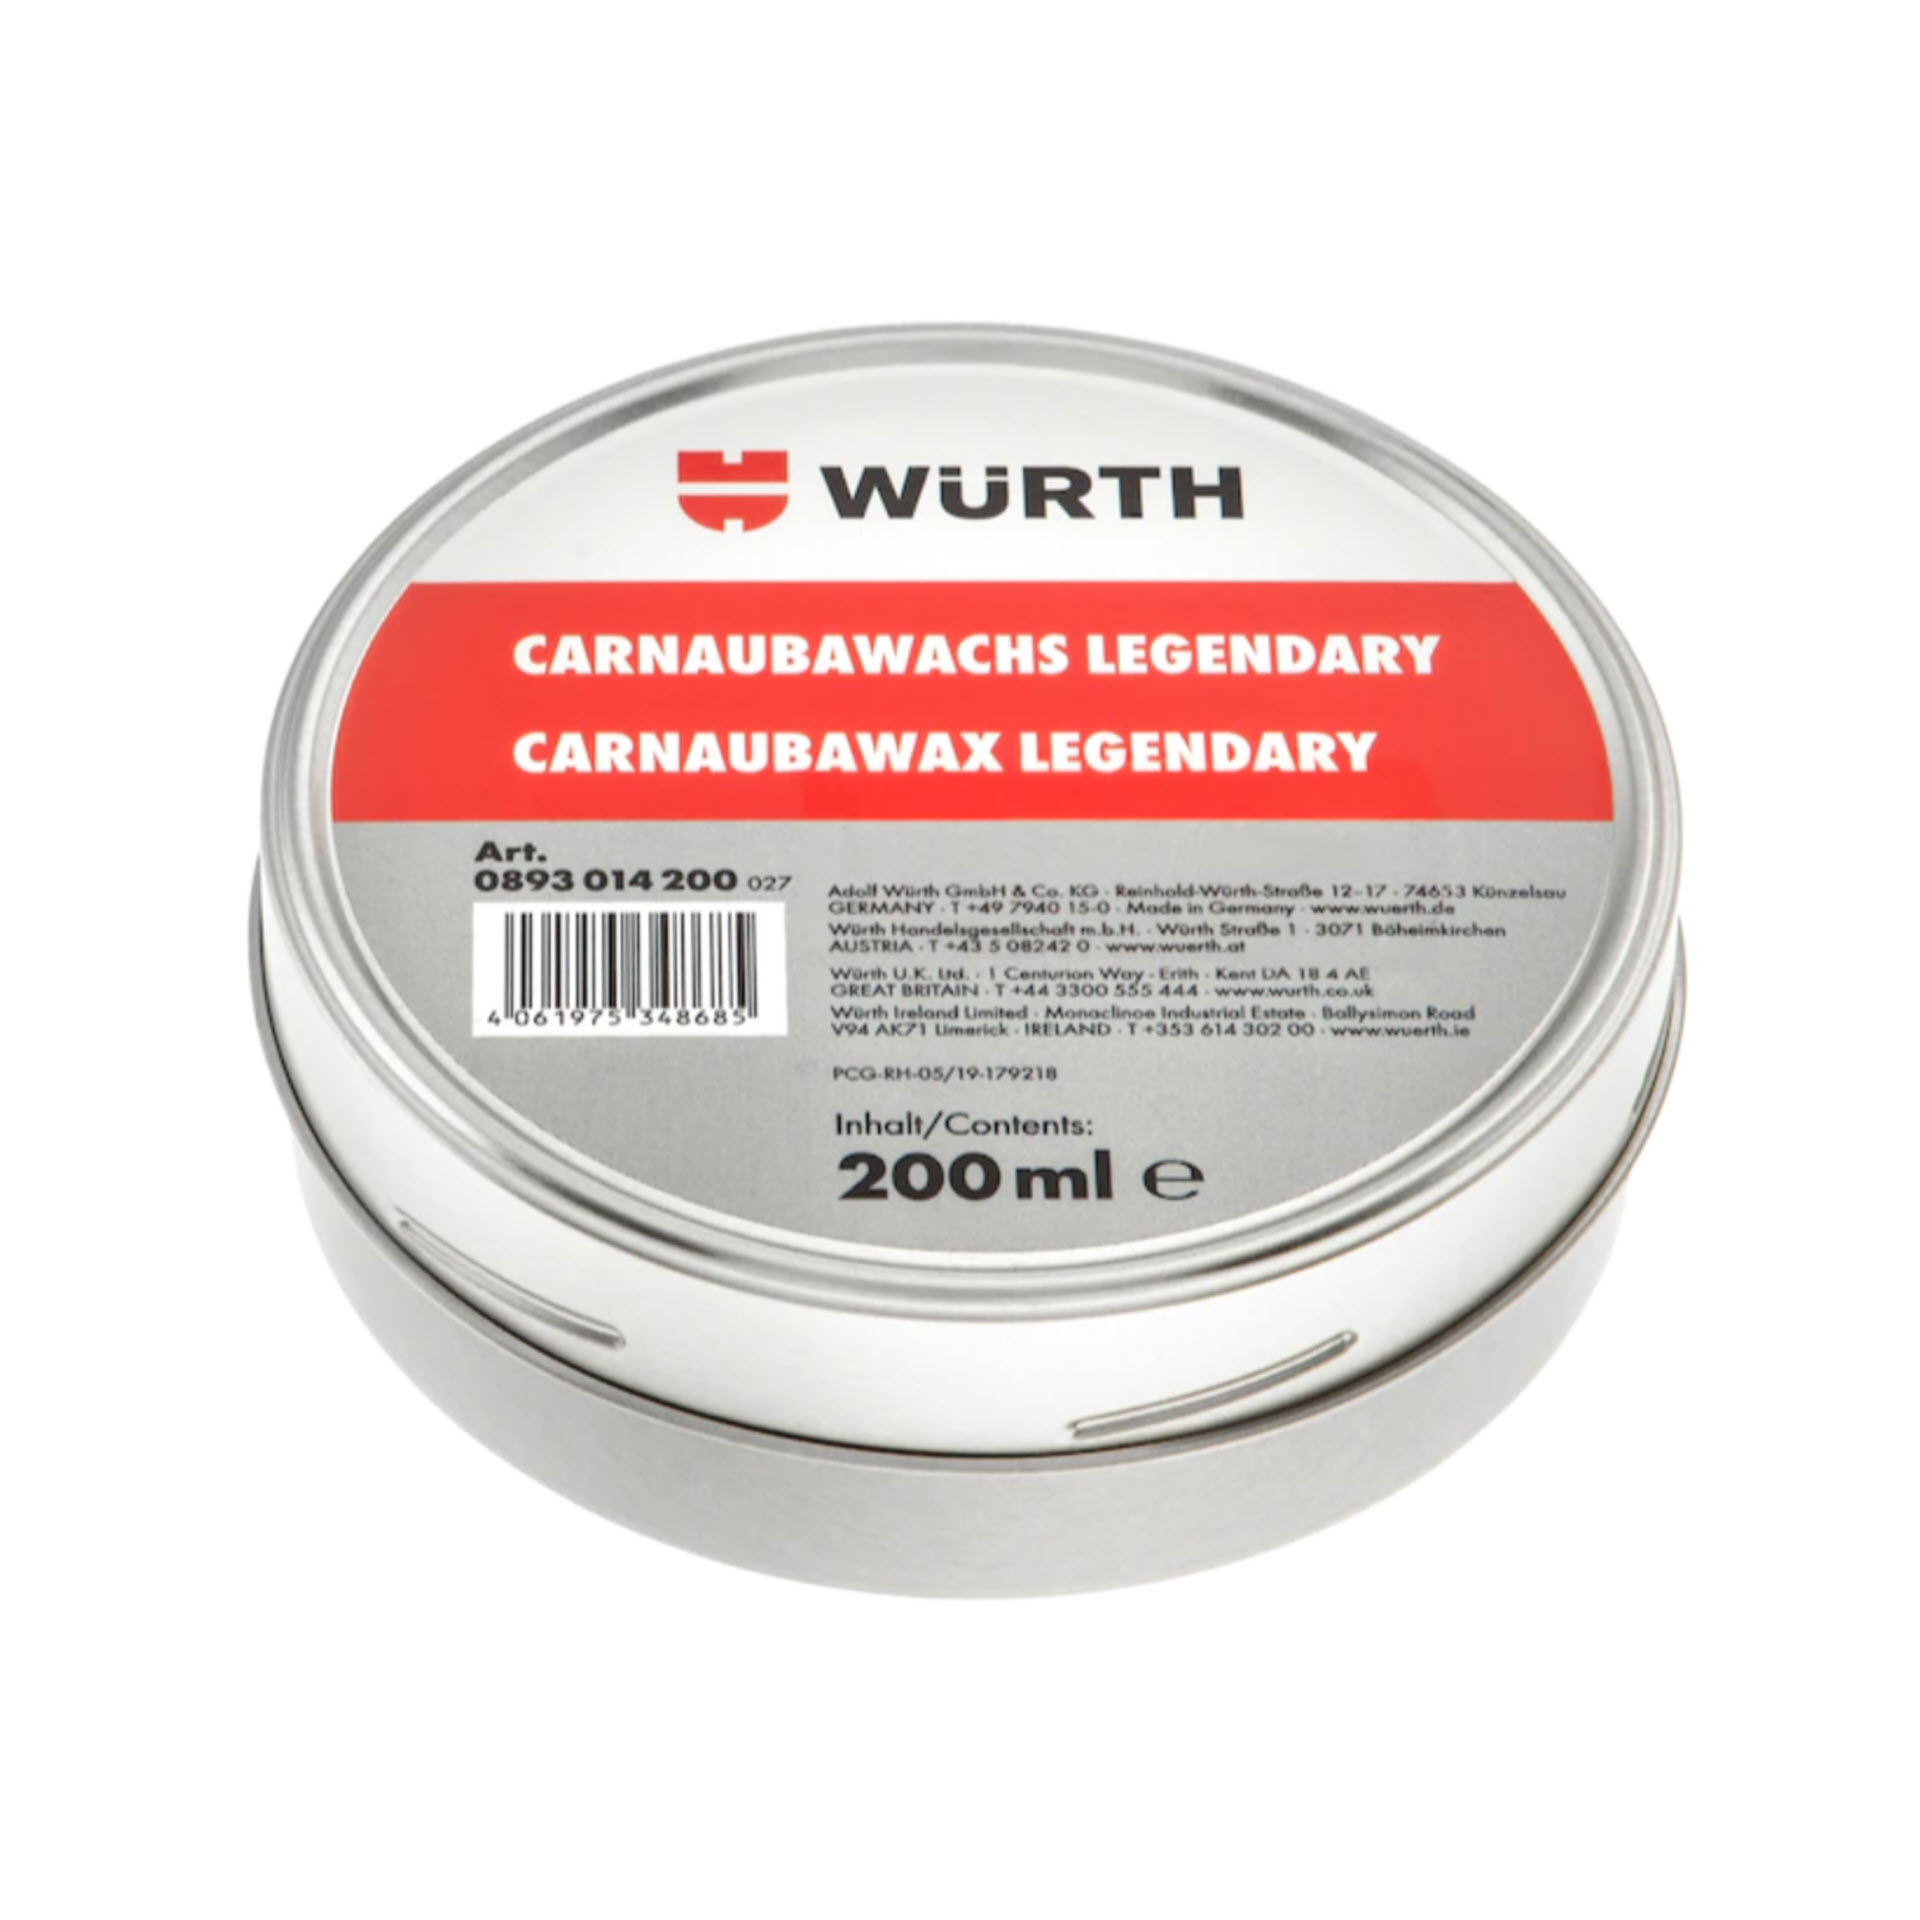 Würth Lackversiegelung Premium Carnauba Wachs, Legendary - 200 ml Dose